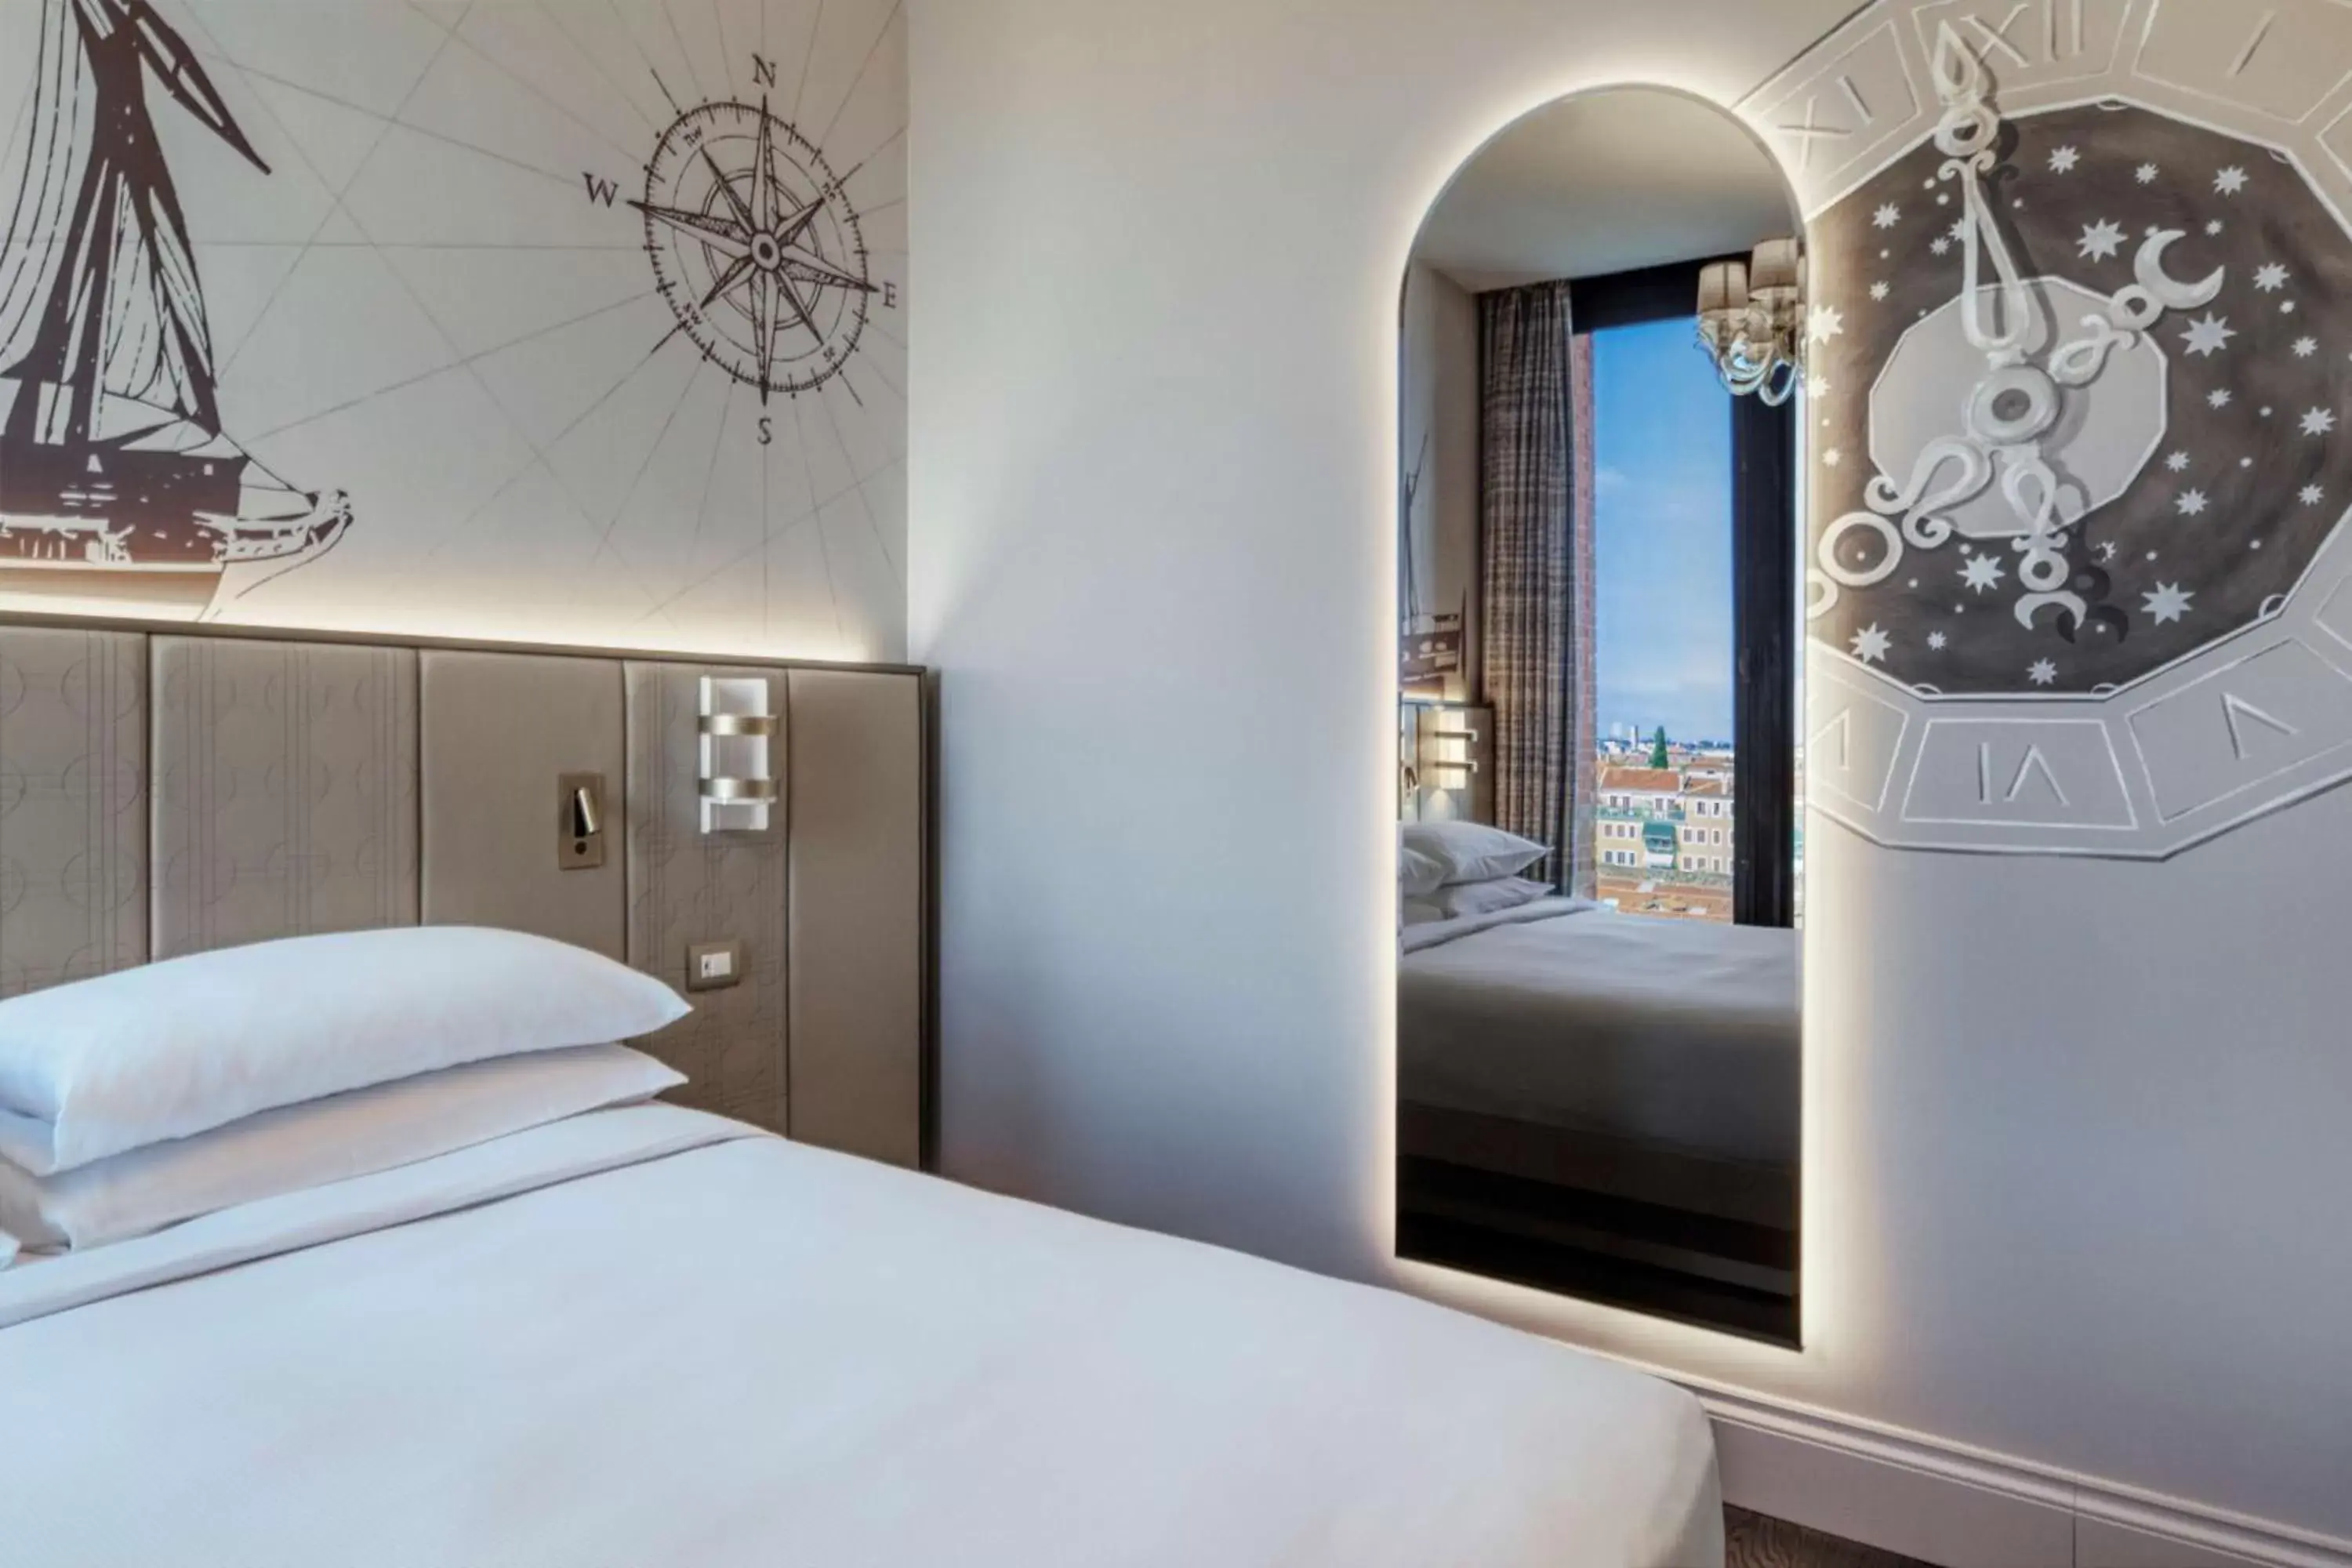 Bed in Hilton Molino Stucky Venice